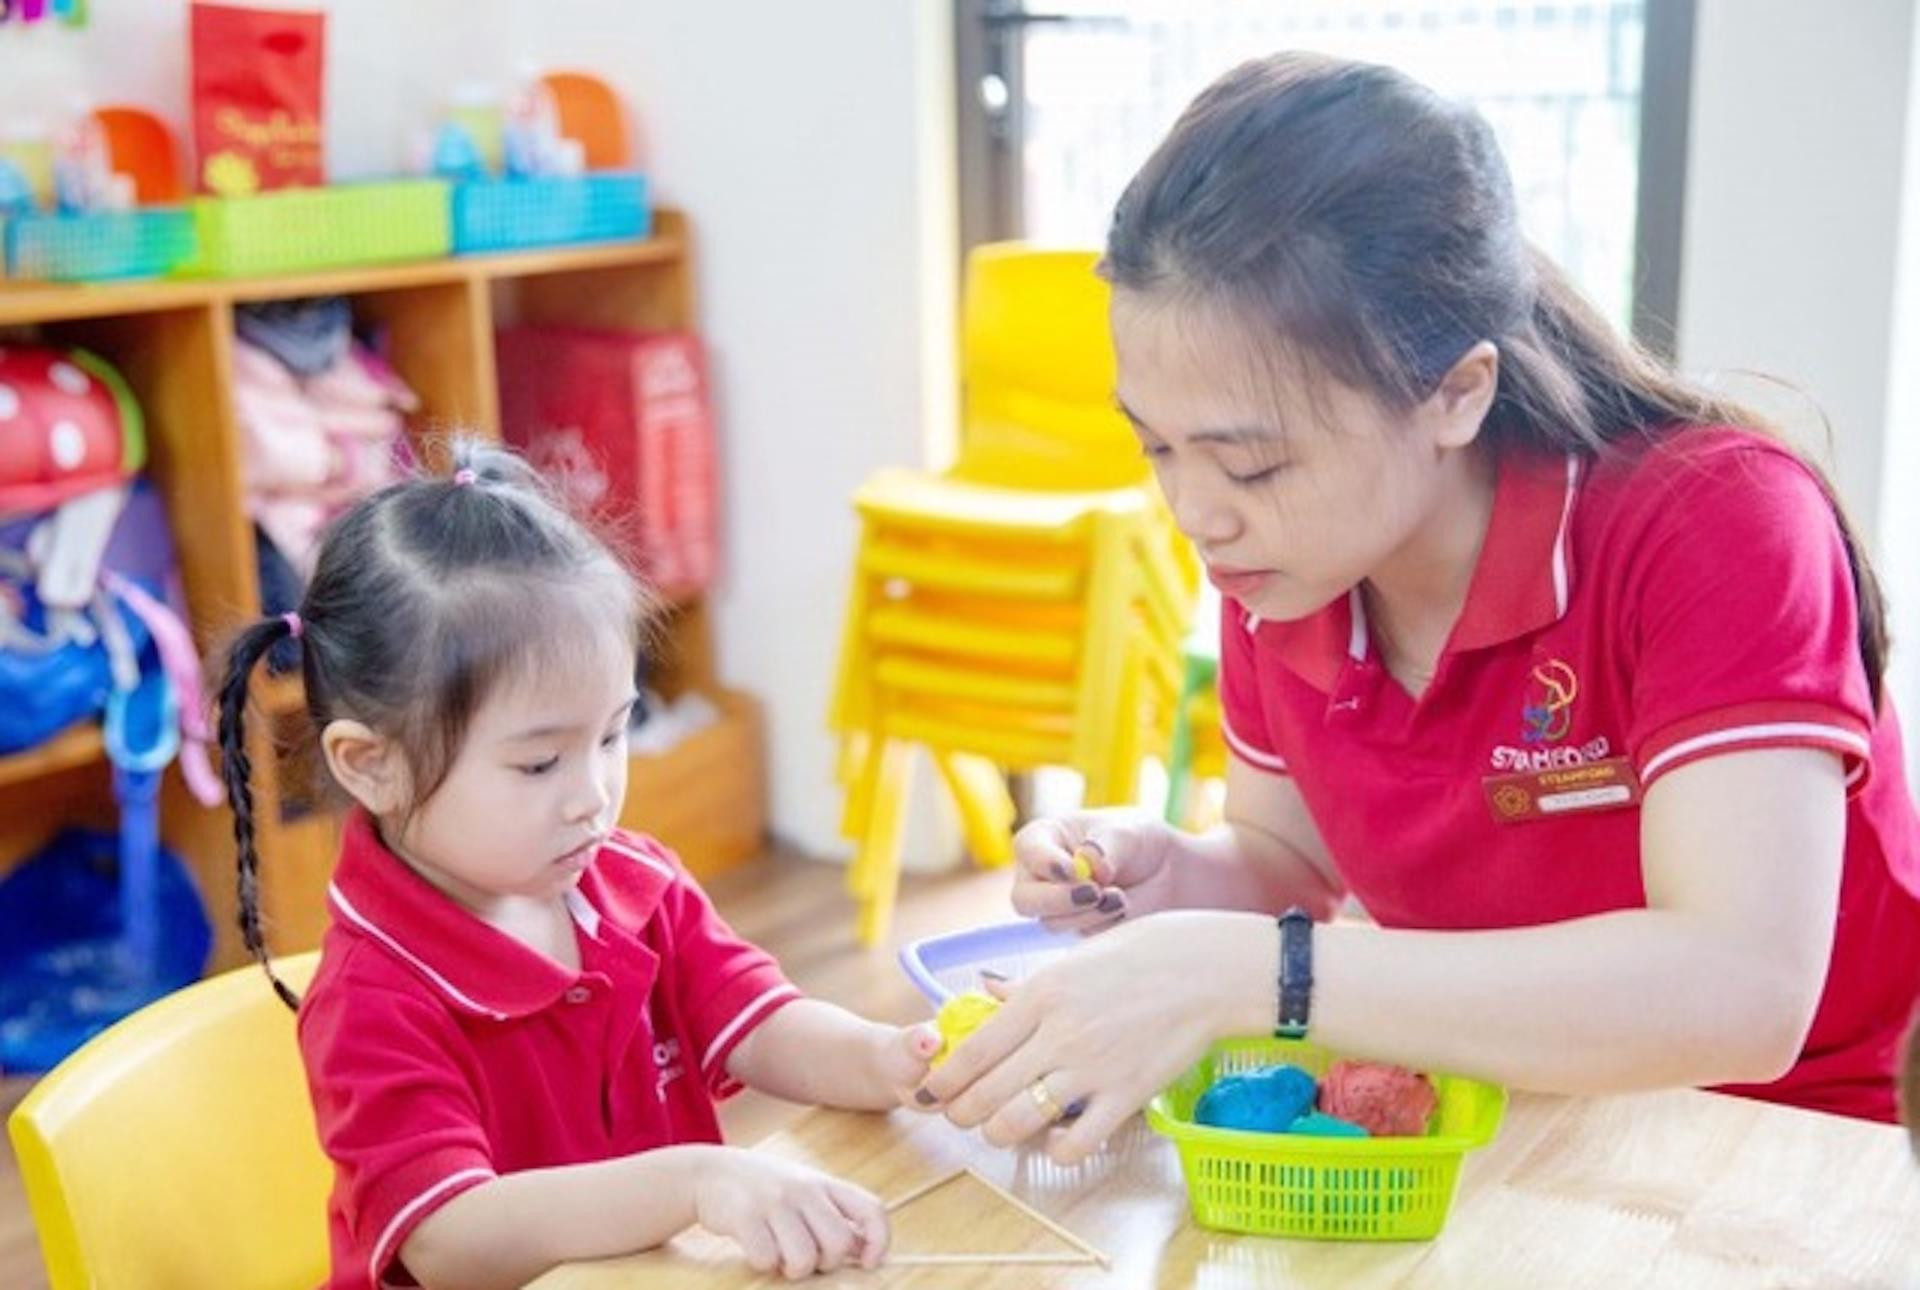 Giáo viên trường tư ở Hà Nội bị ảnh hưởng COVID-19 được hỗ trợ 1,5 triệu đồng - 1